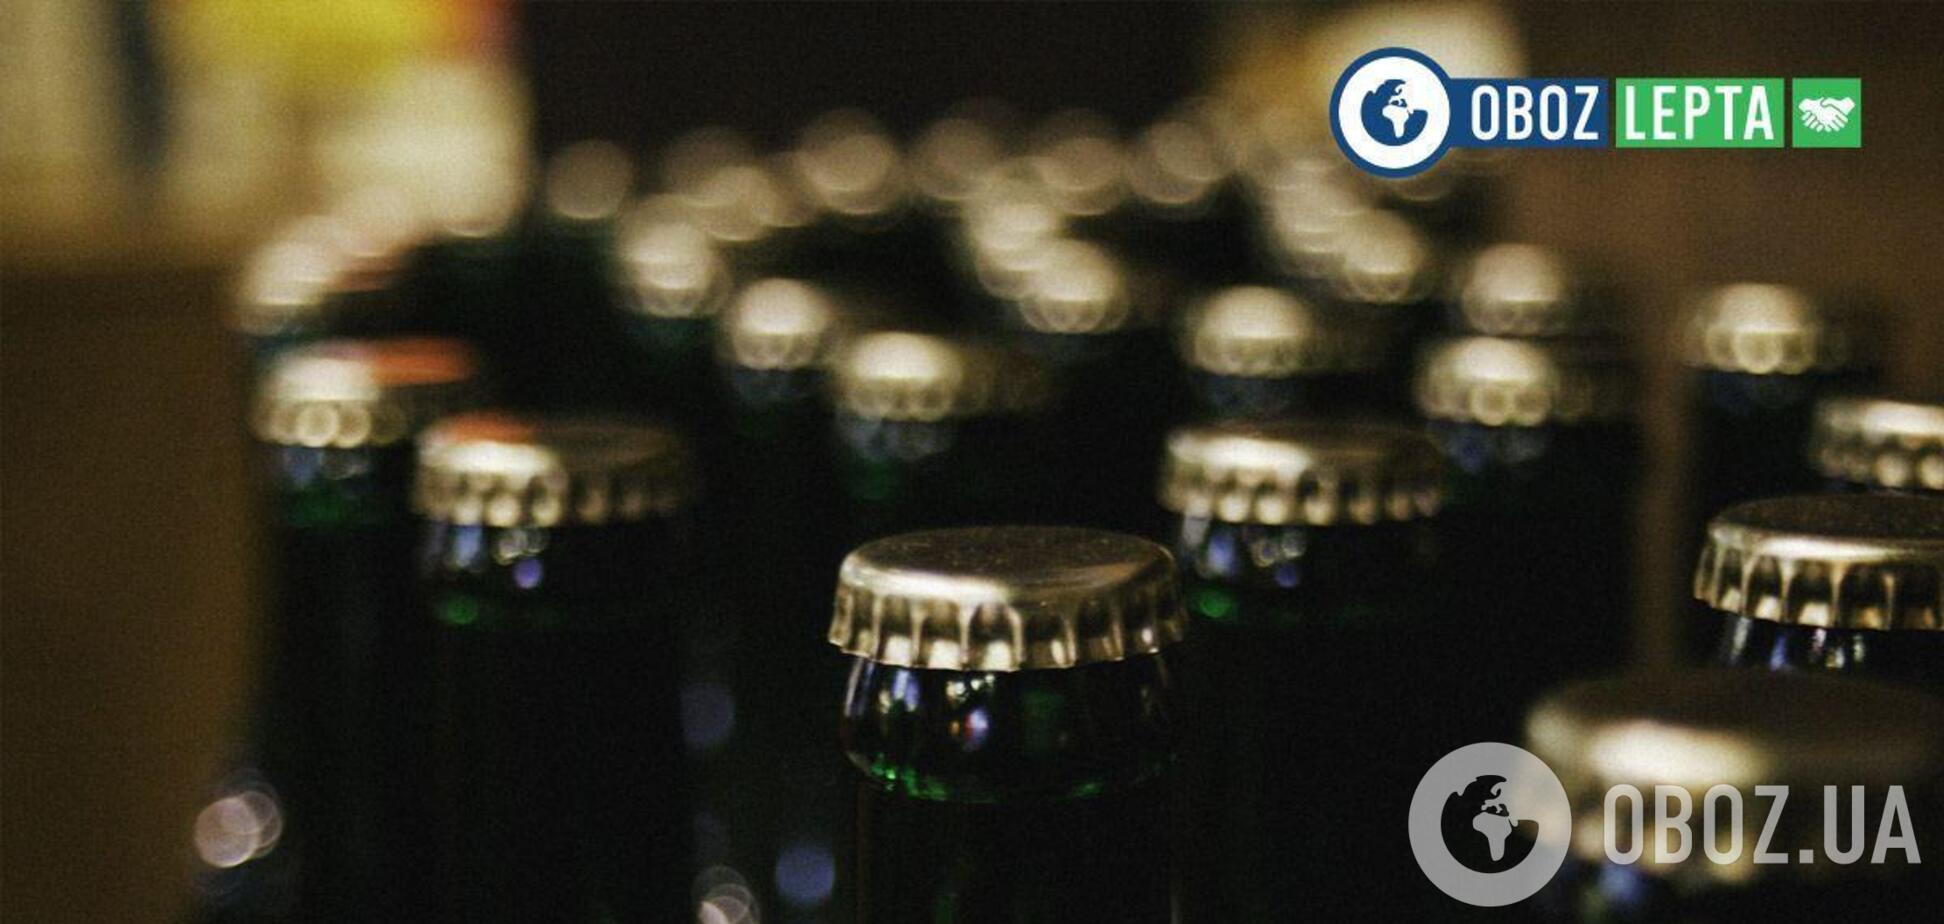 Lepta відправила запити в 12 найбільших алкогольних компаній, щоб ті надали необхідну інформацію про програми КСВ